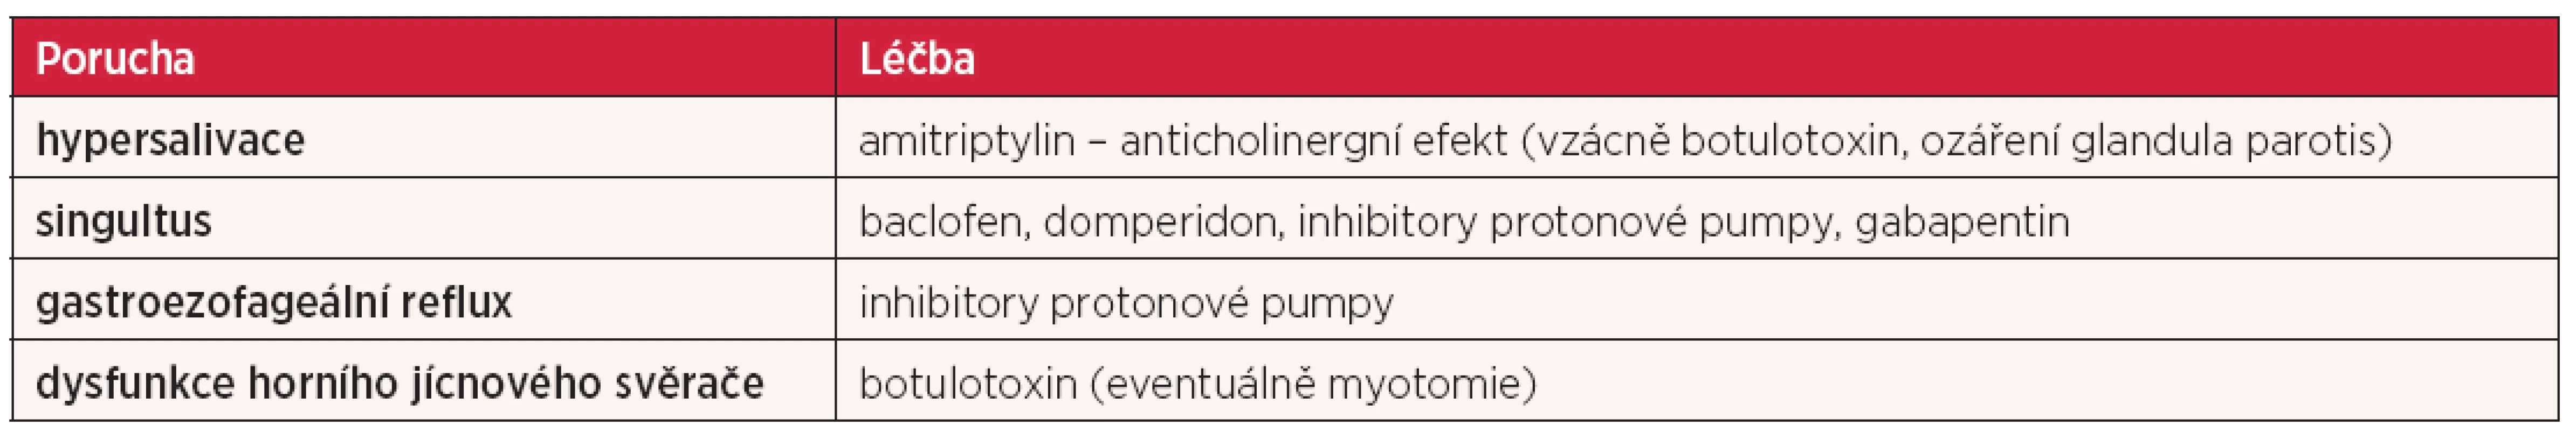 Farmakologická léčba poruch polykání u RSM (upraveno dle Prosiegel et al. (16)